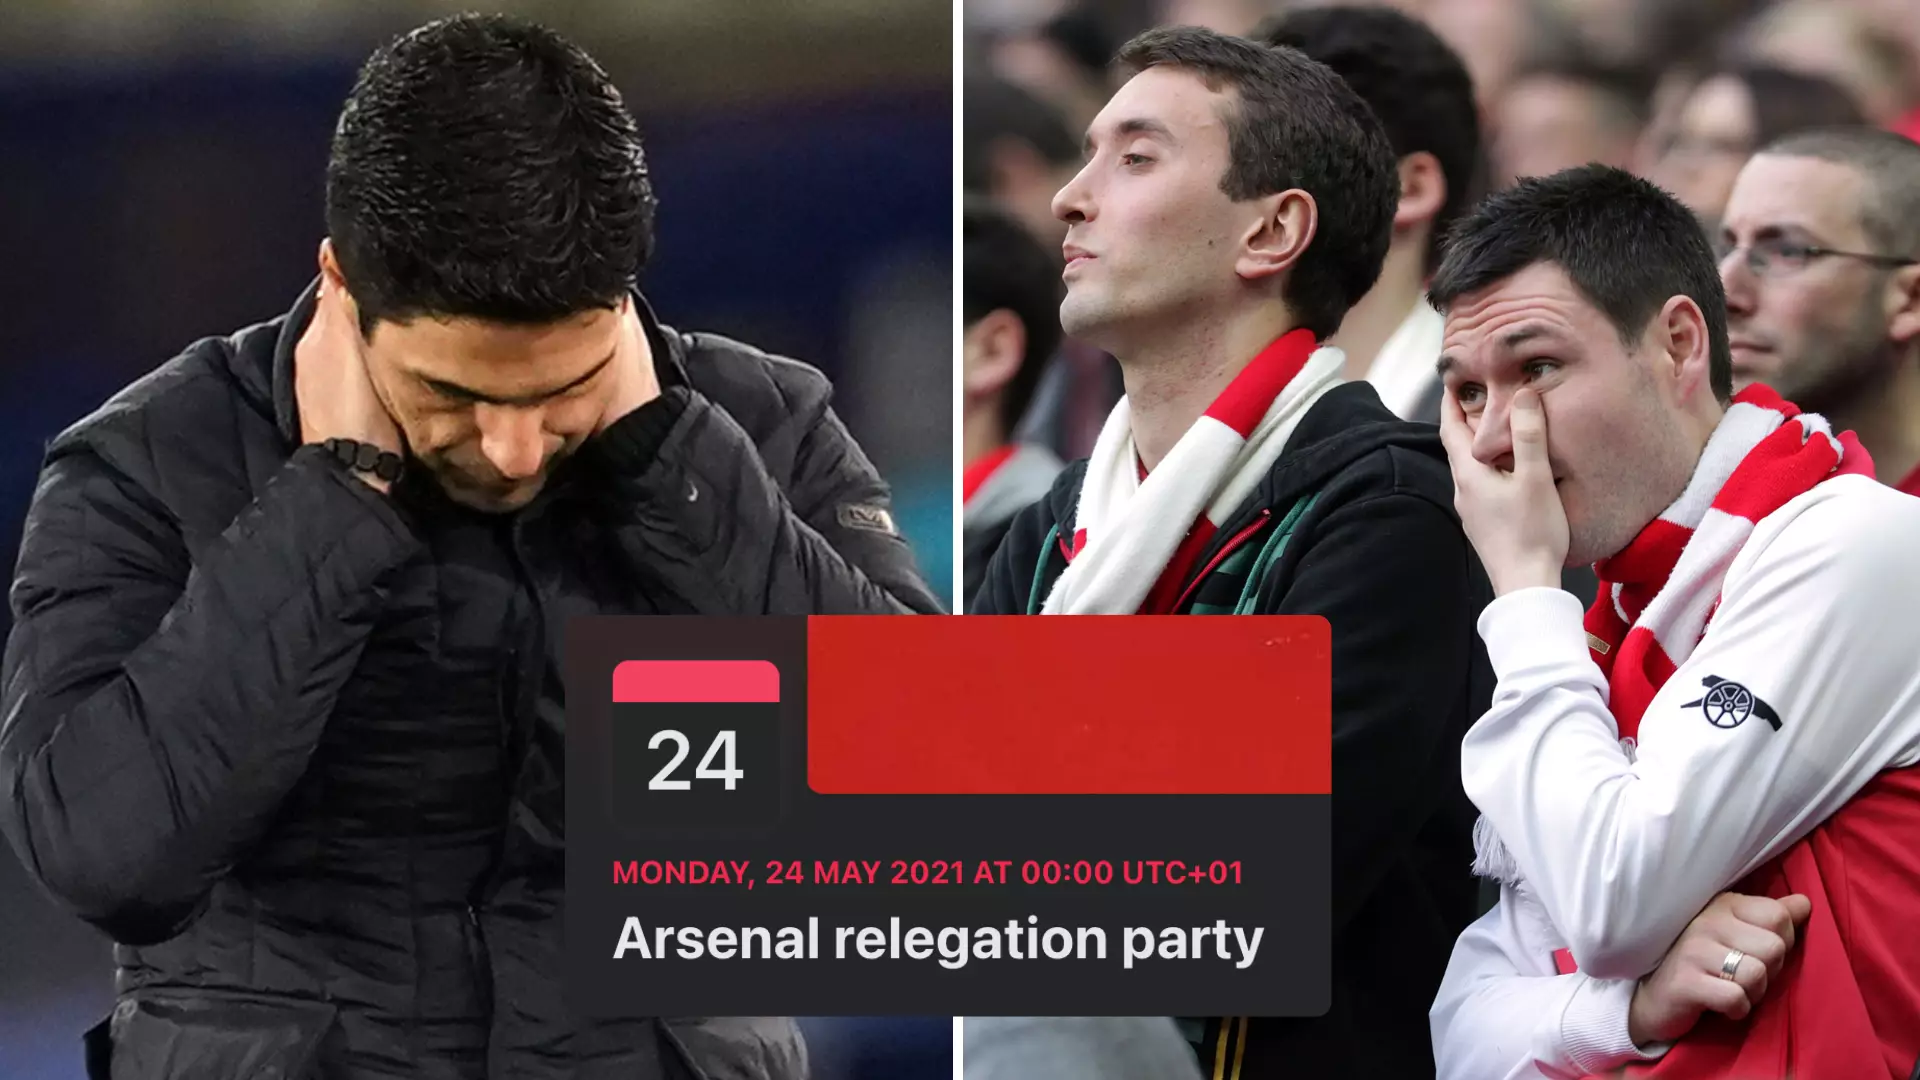 Fan Sets Up 'Arsenal Relegation Party' On Facebook After Gunners' Shocking Premier League Start